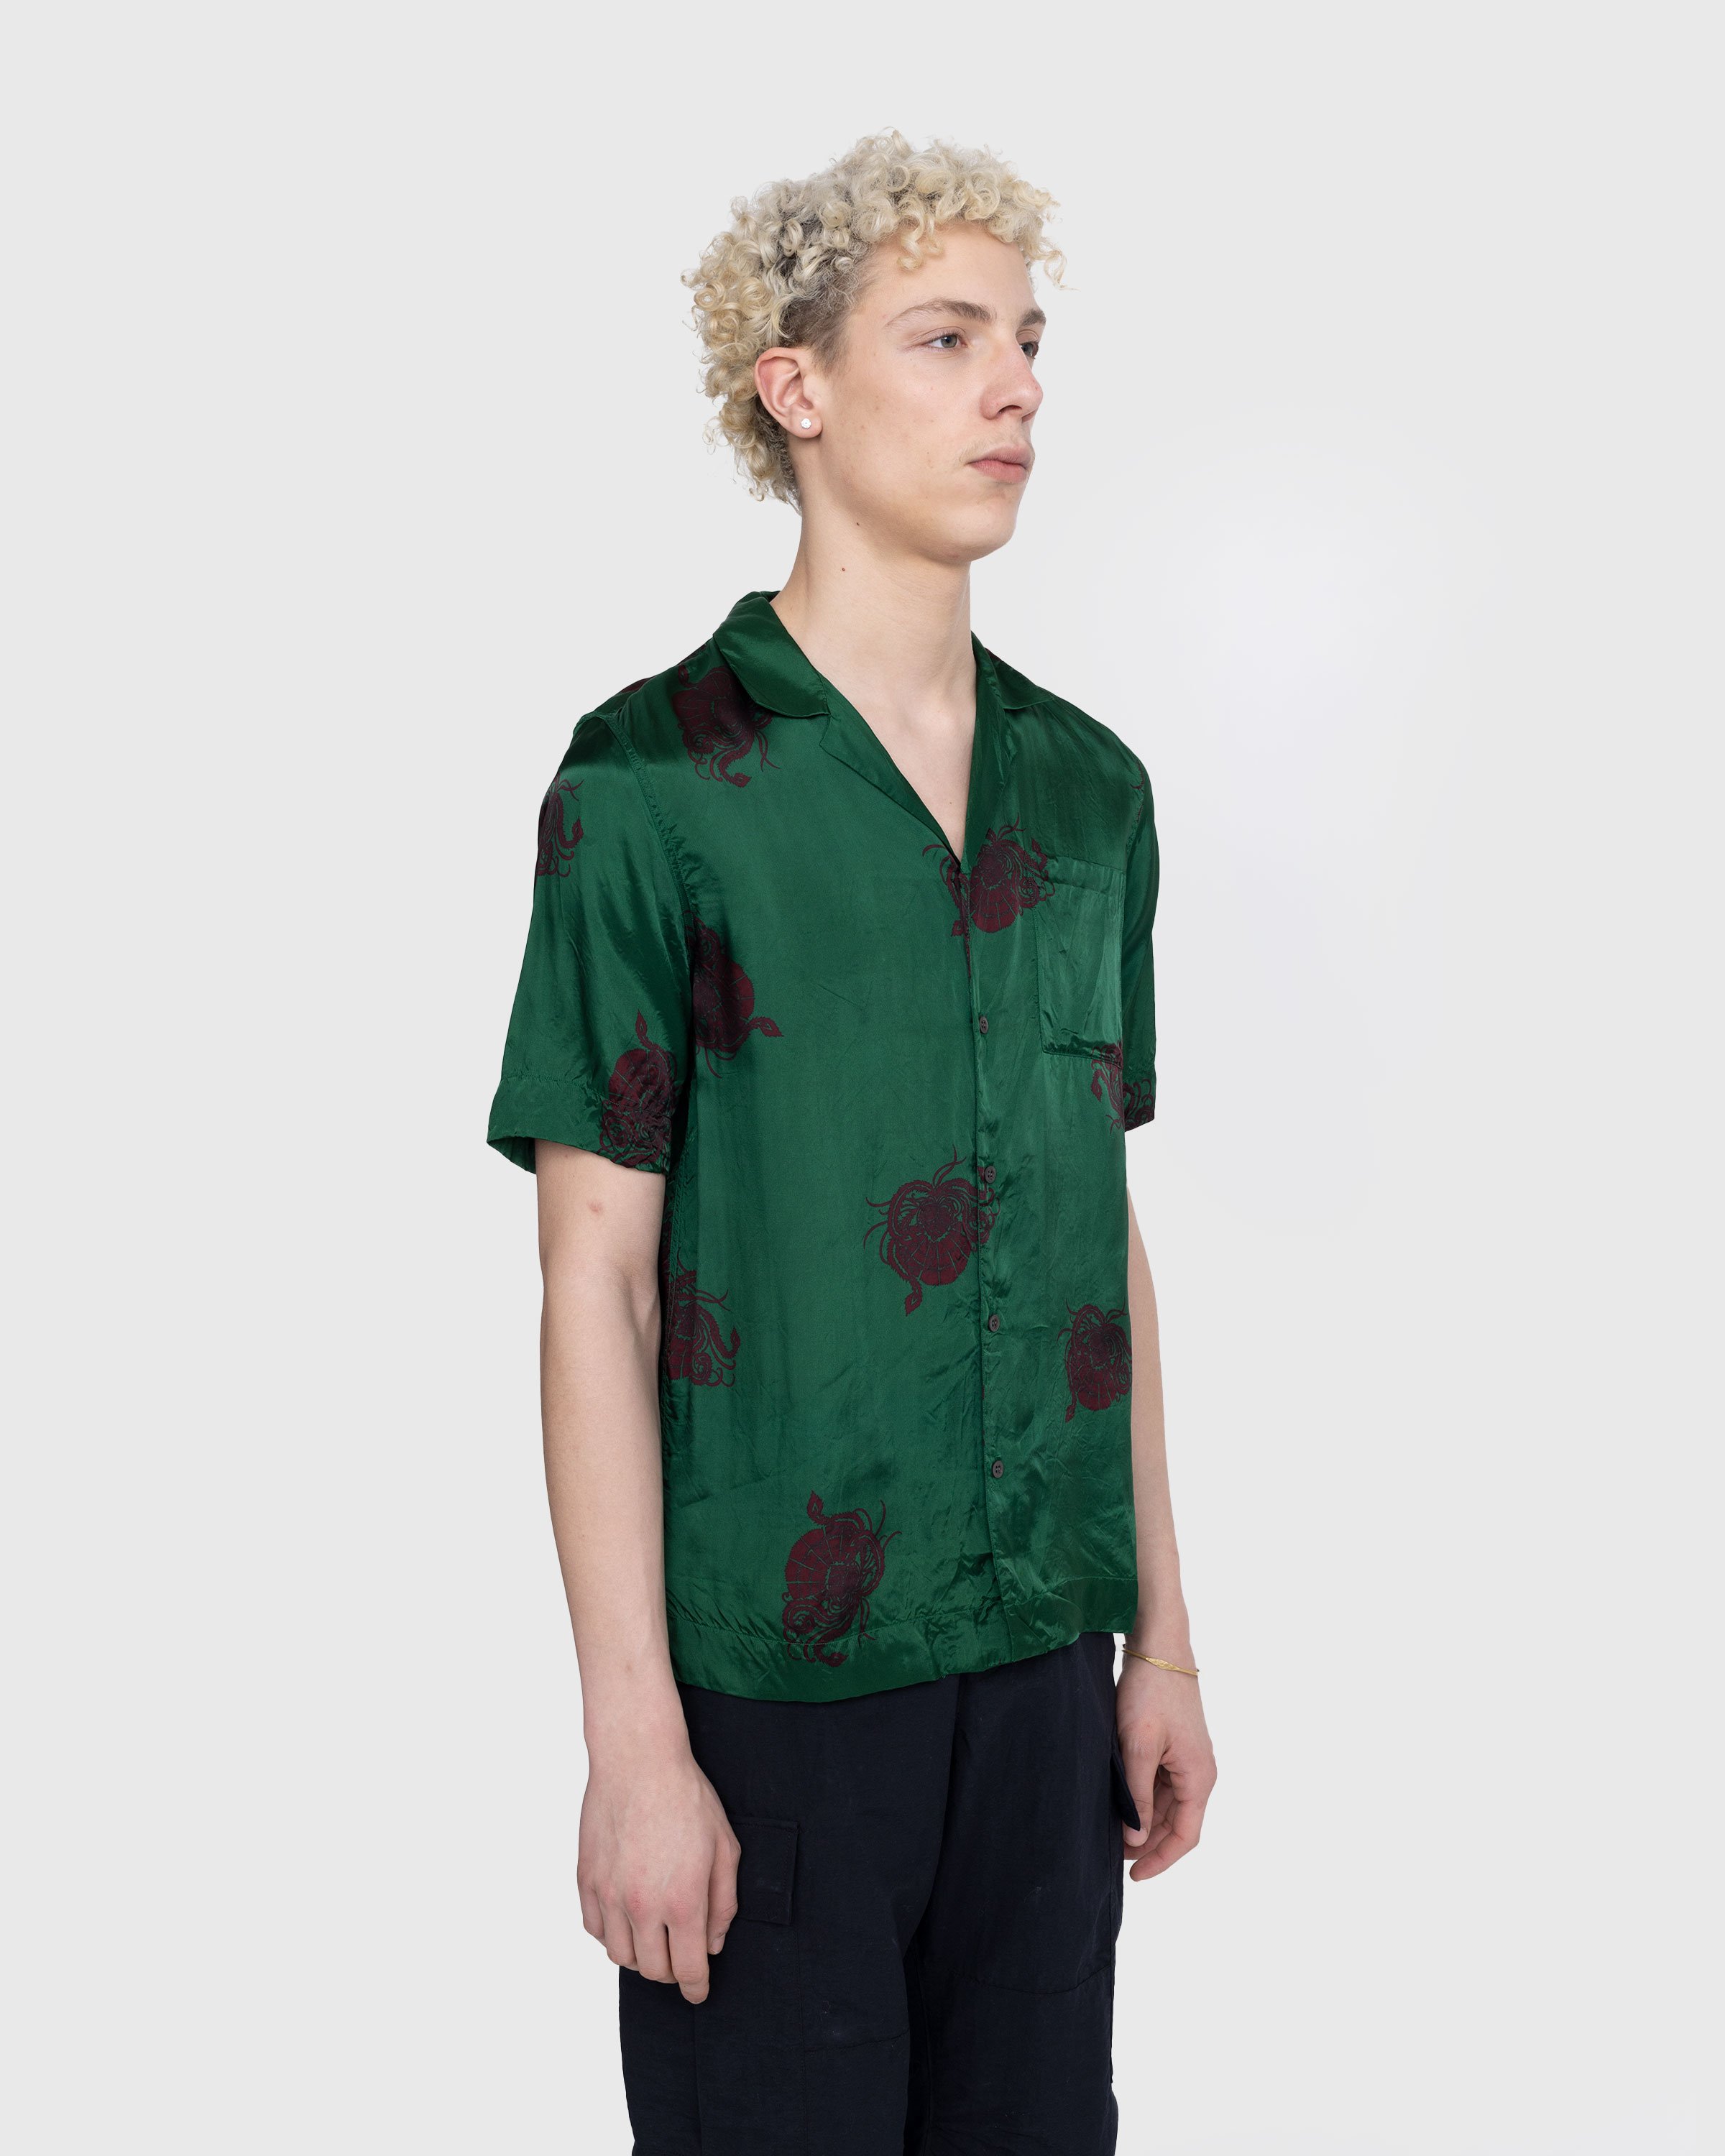 Dries van Noten - Carltone Shirt Bottle - Clothing - Green - Image 4